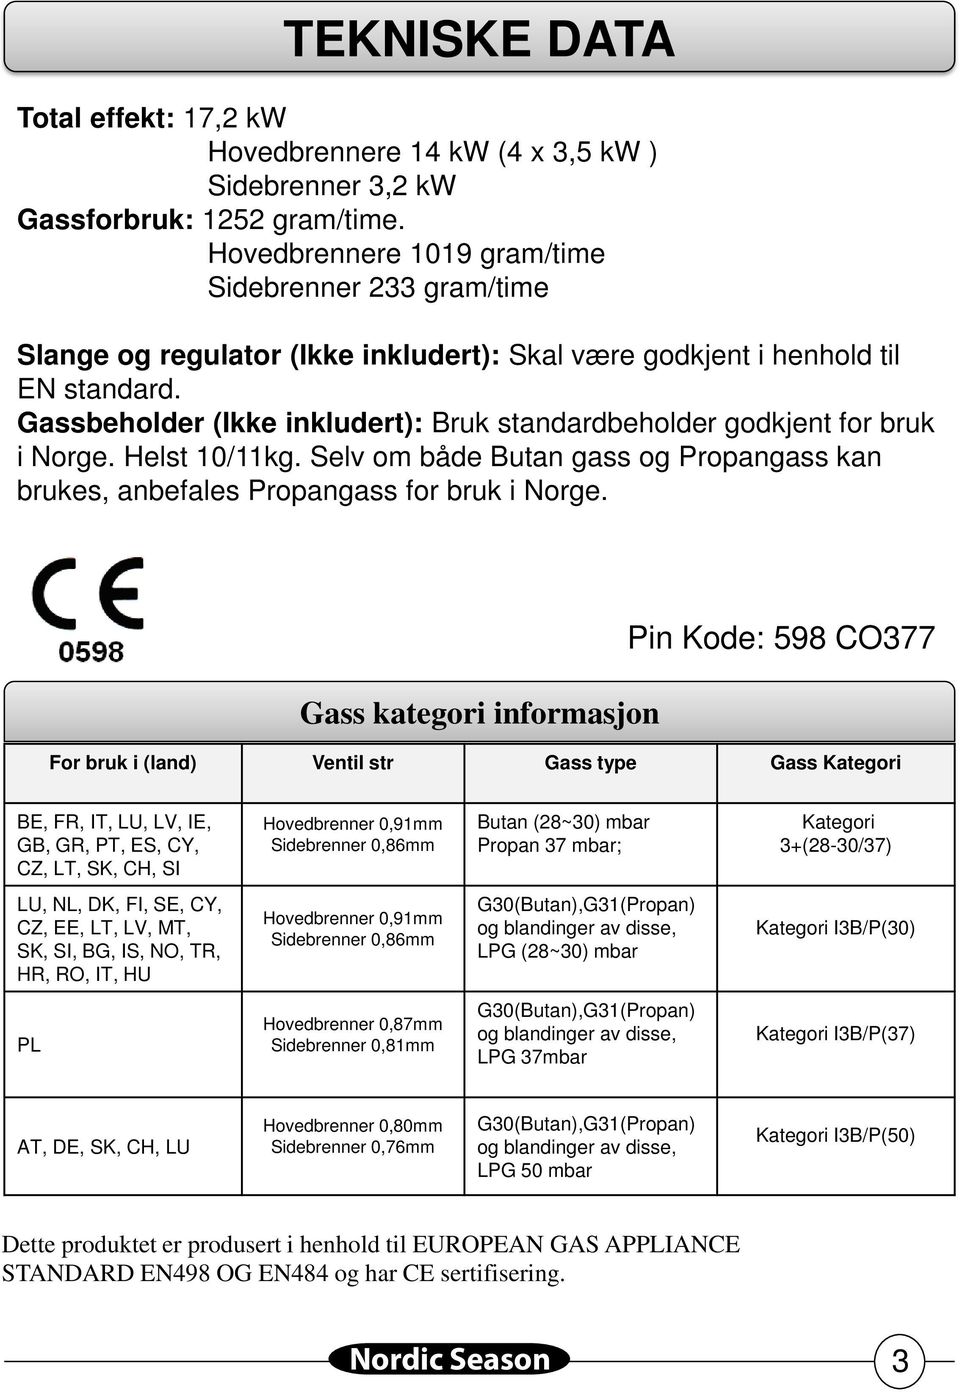 Gassbeholder (Ikke inkludert): Bruk standardbeholder godkjent for bruk i Norge. Helst 10/11kg. Selv om både Butan gass og Propangass kan brukes, anbefales Propangass for bruk i Norge.